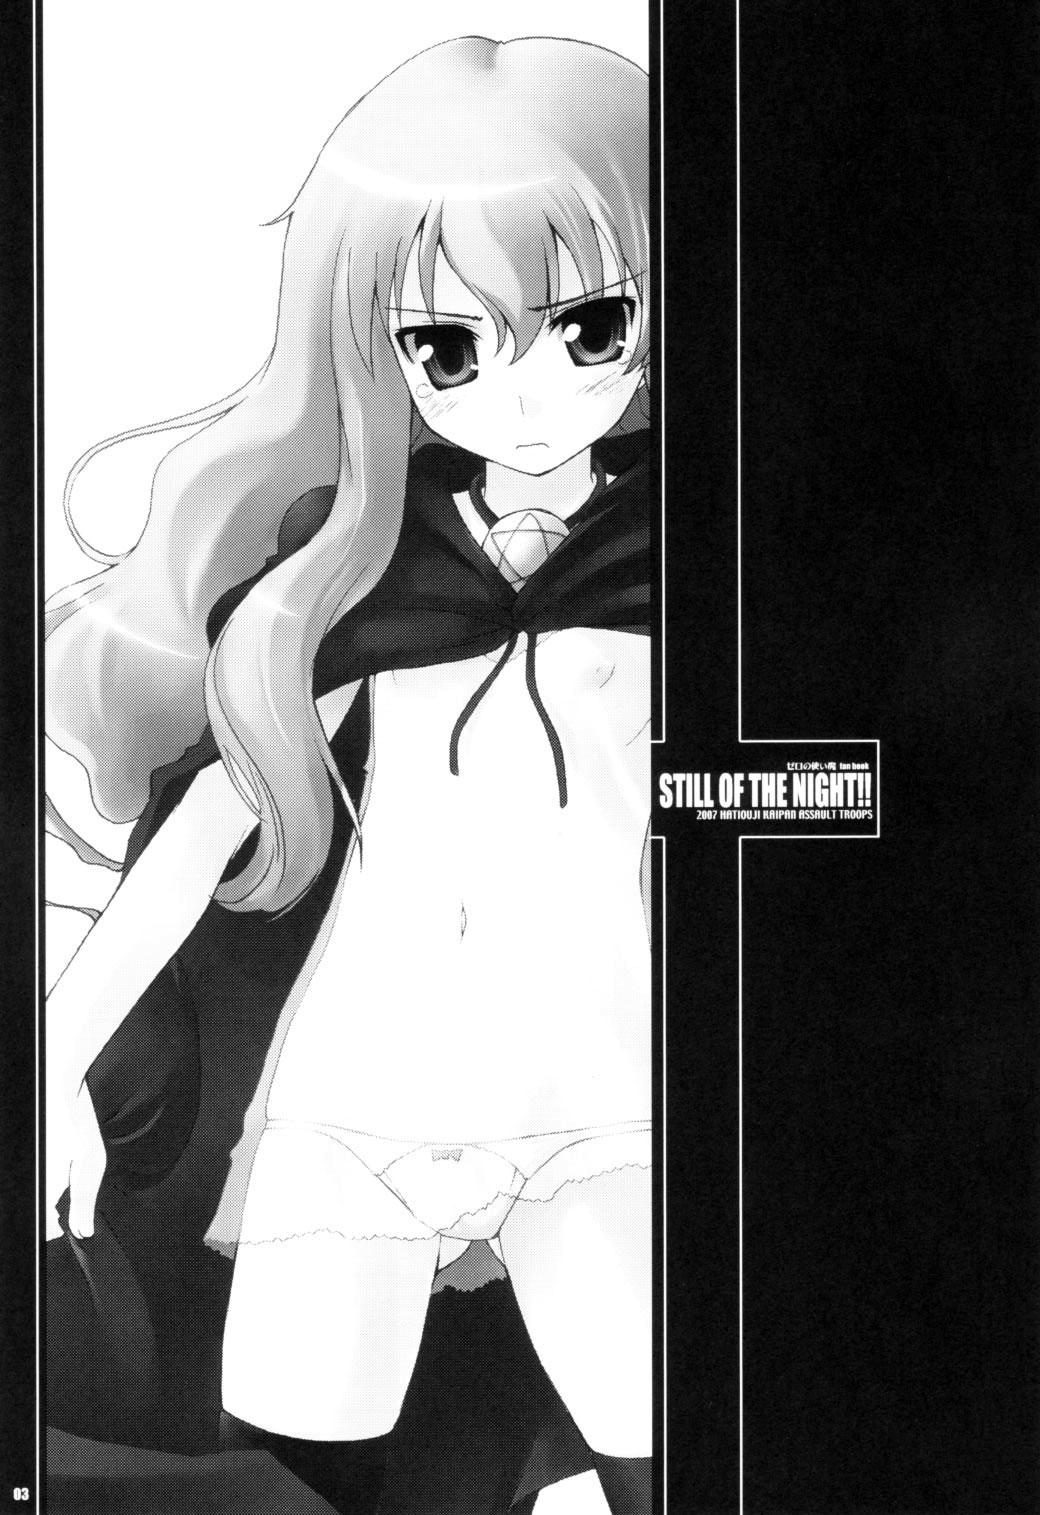 Porn Still of the Night!! - Zero no tsukaima Blowjob - Page 2